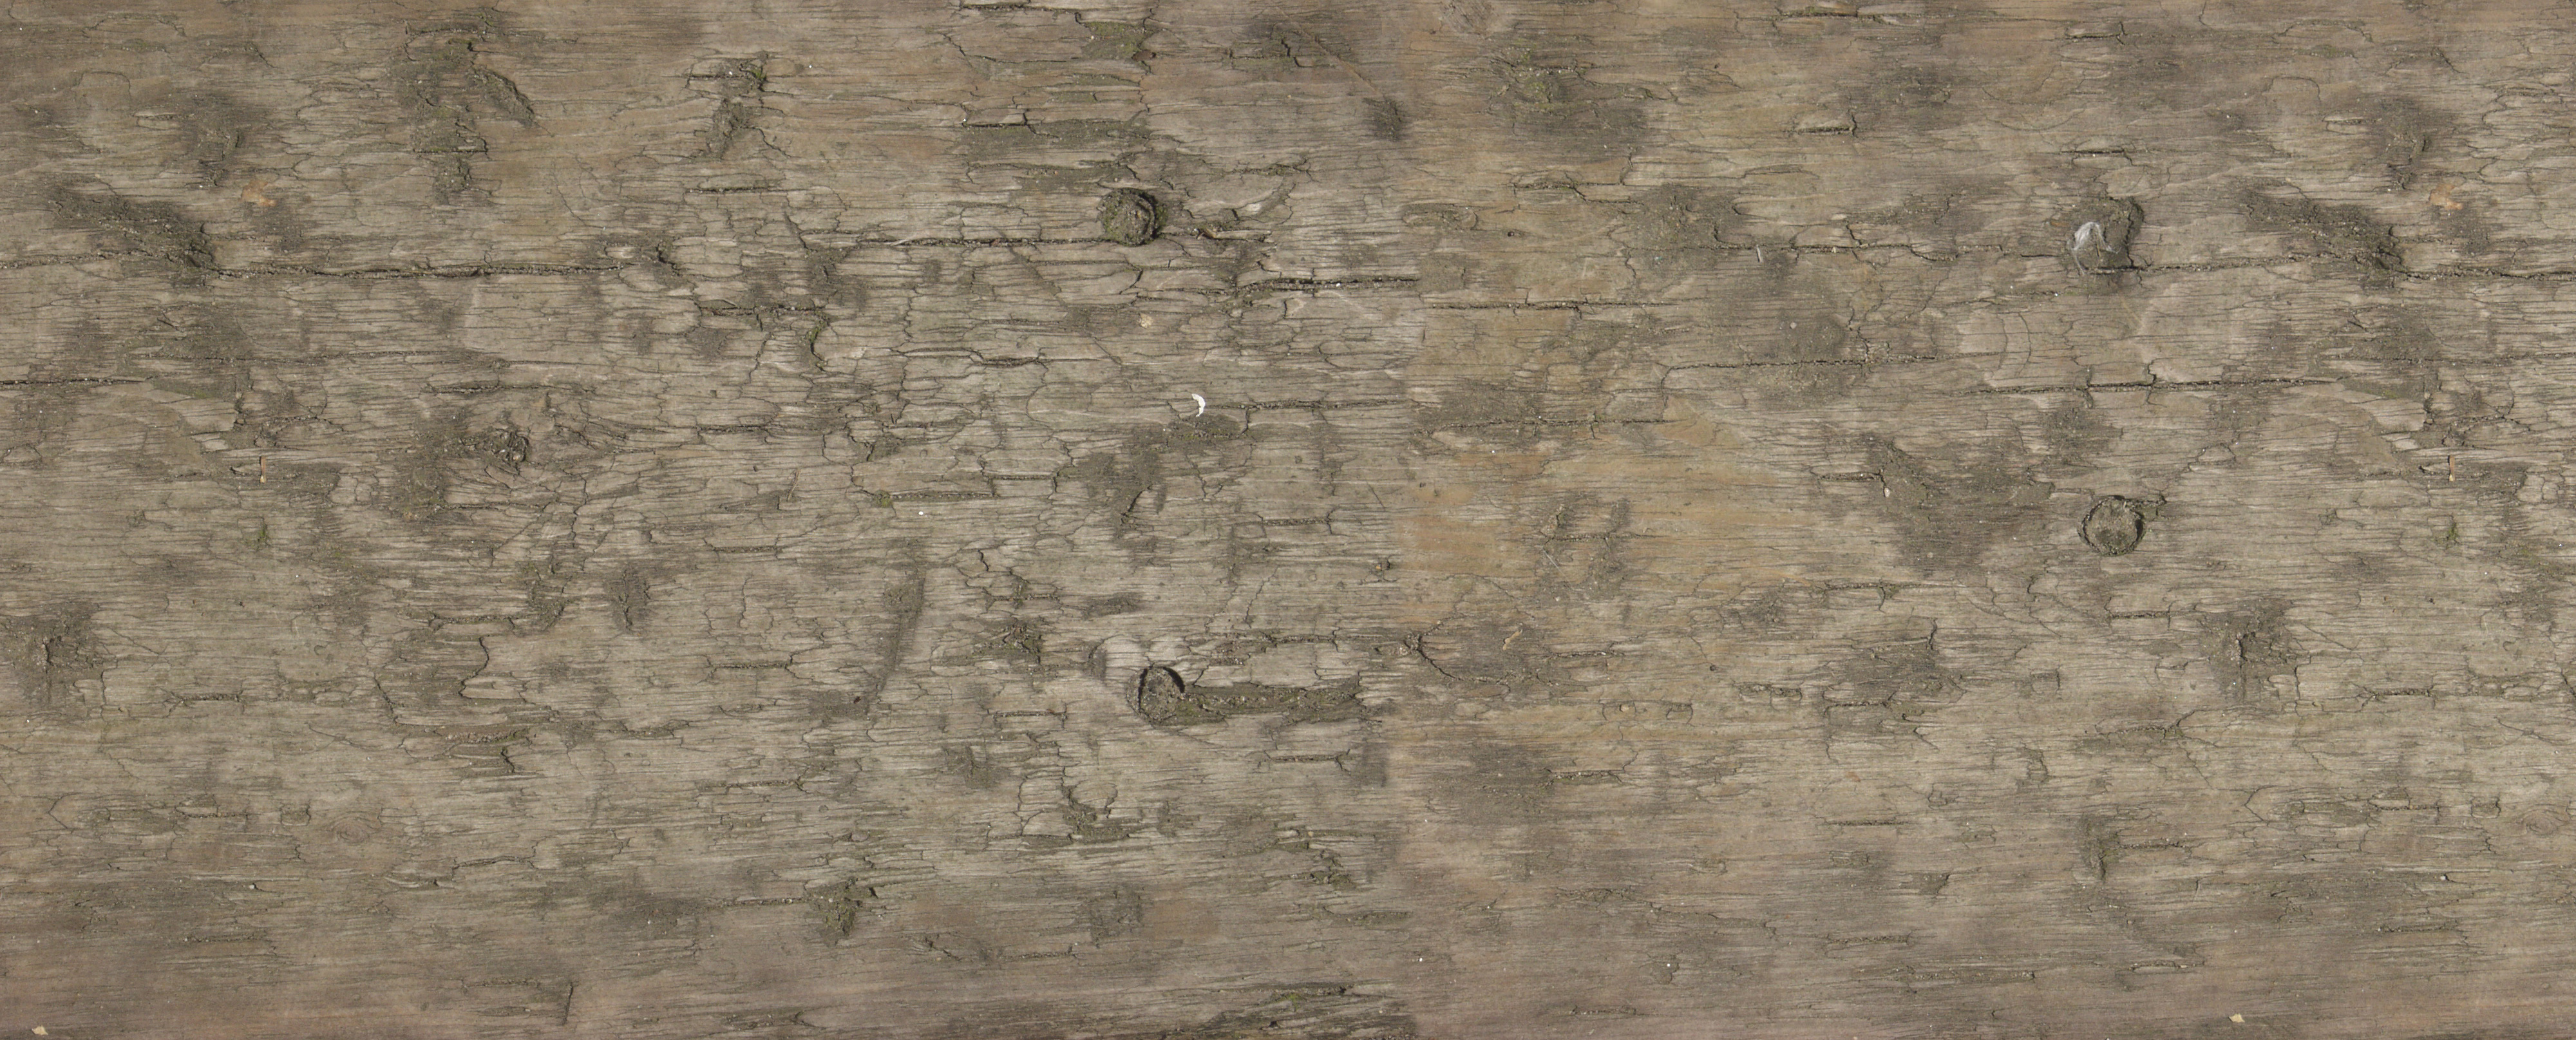 欧模网 3d贴图下载  木纹木材3d贴图下载  残旧木3d贴图下载  木材